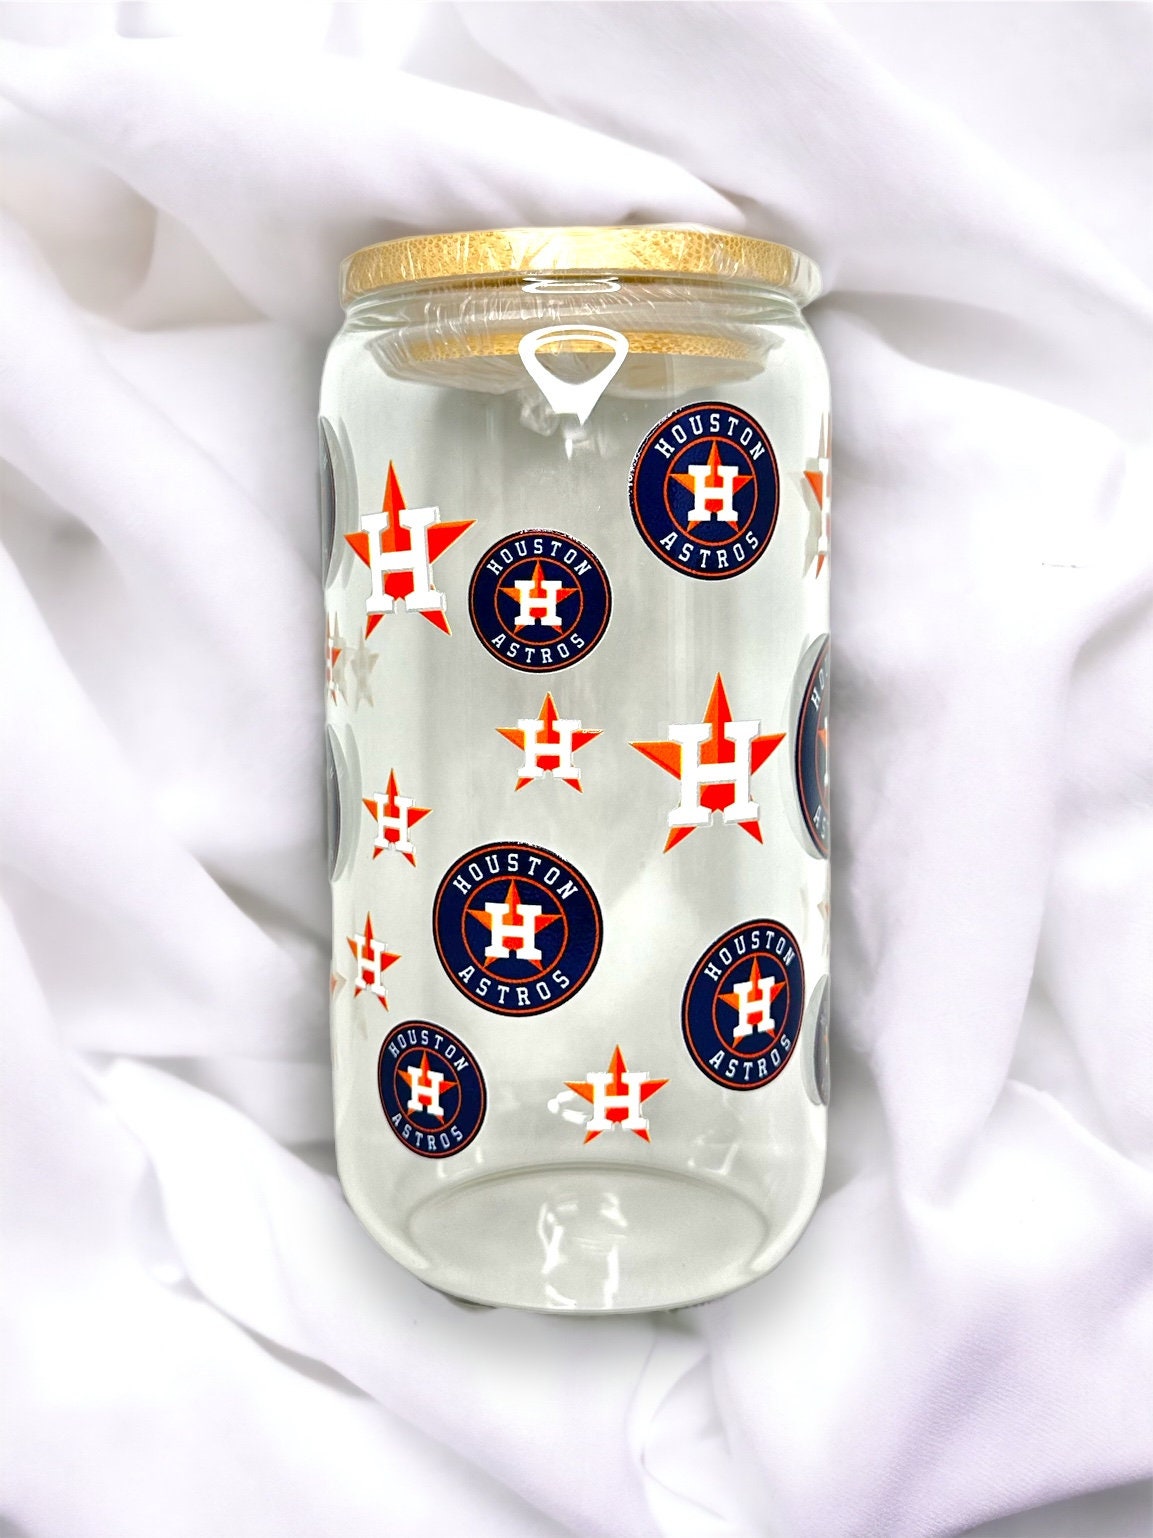 Houston Astros - Pilsner Beer Glass Gift Set – PICNIC TIME FAMILY